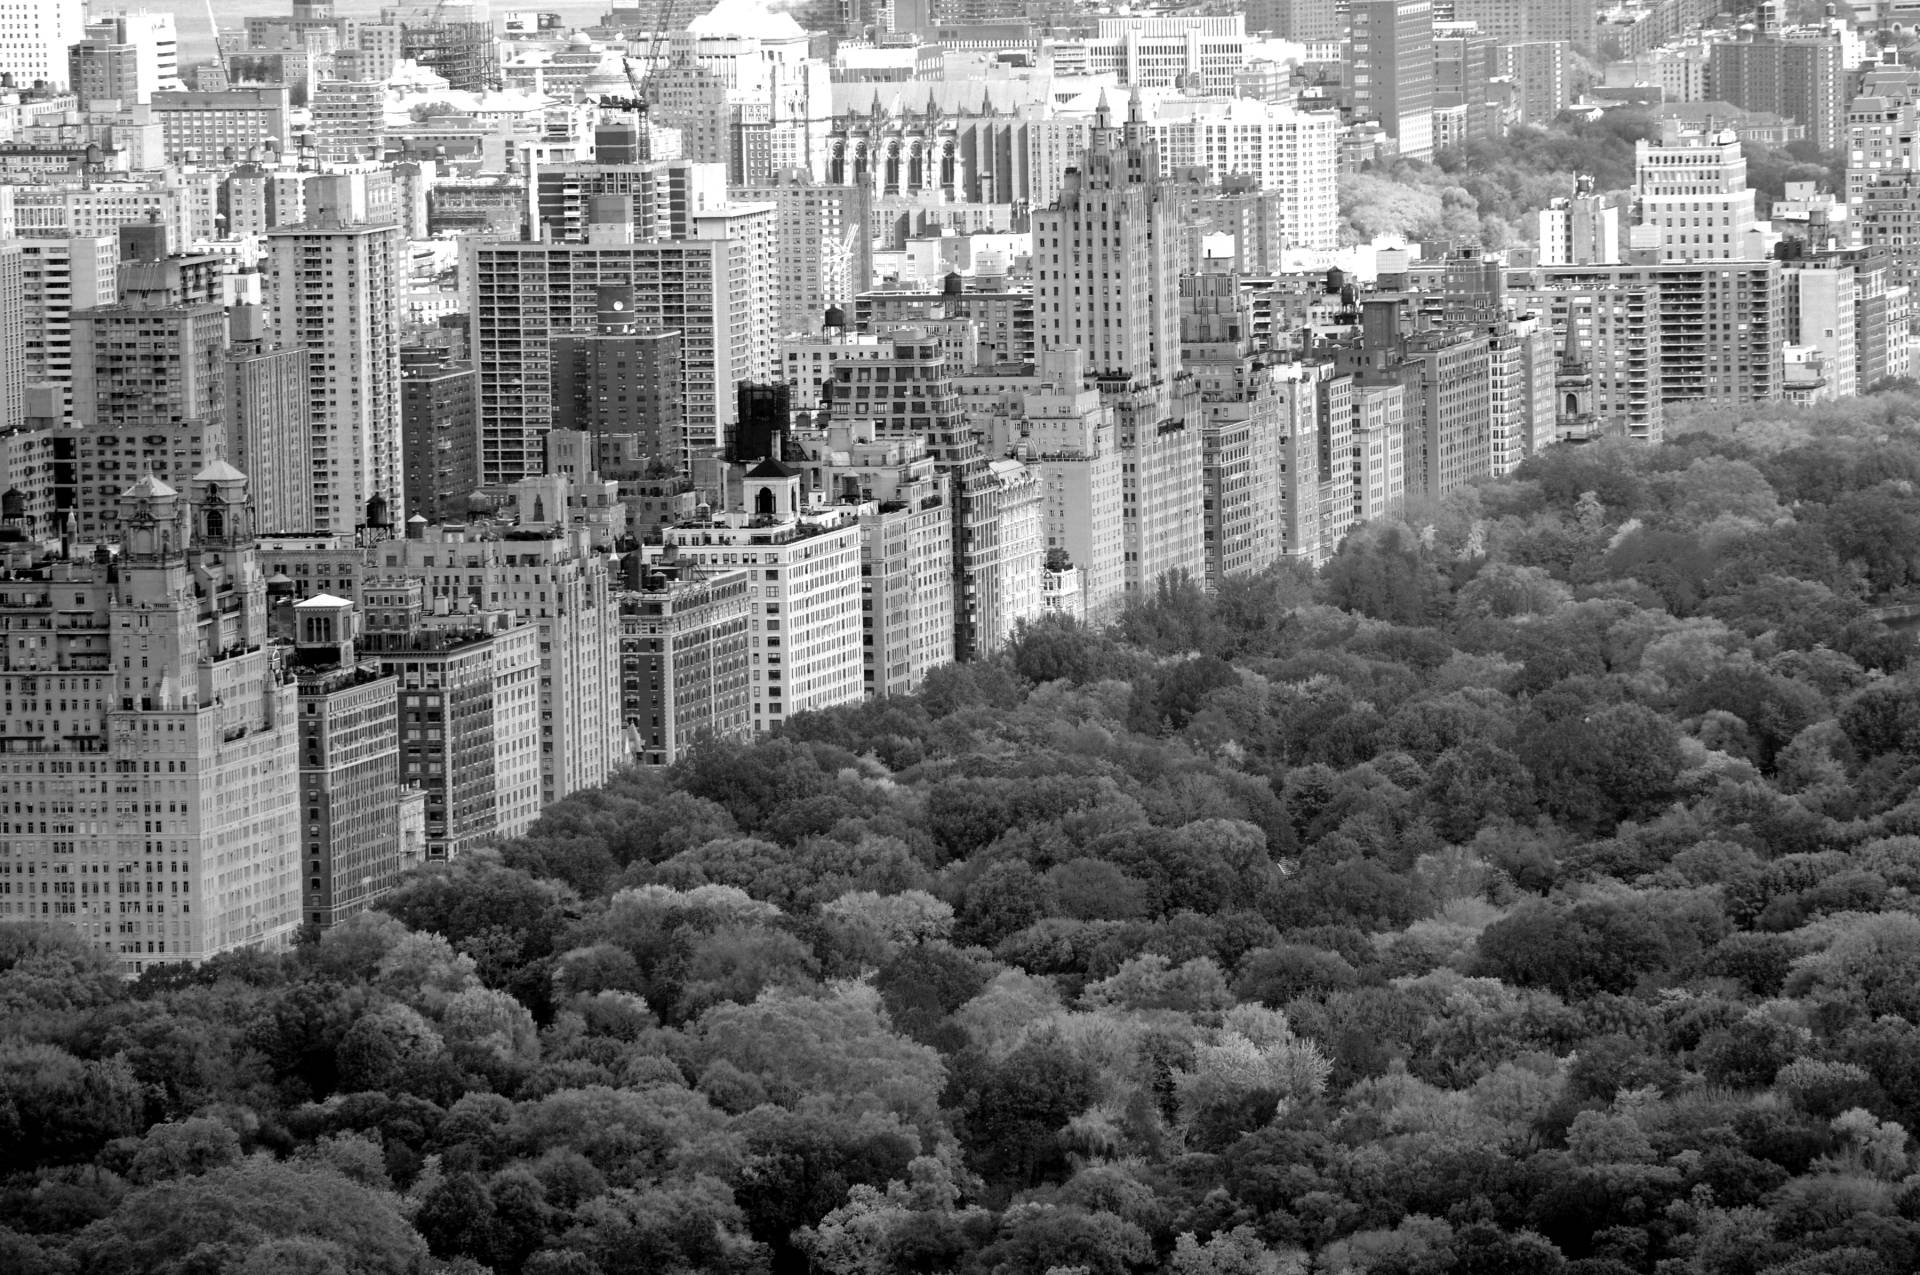 Papermoon Fototapete "Central Park Schwarz & Weiß" von Papermoon